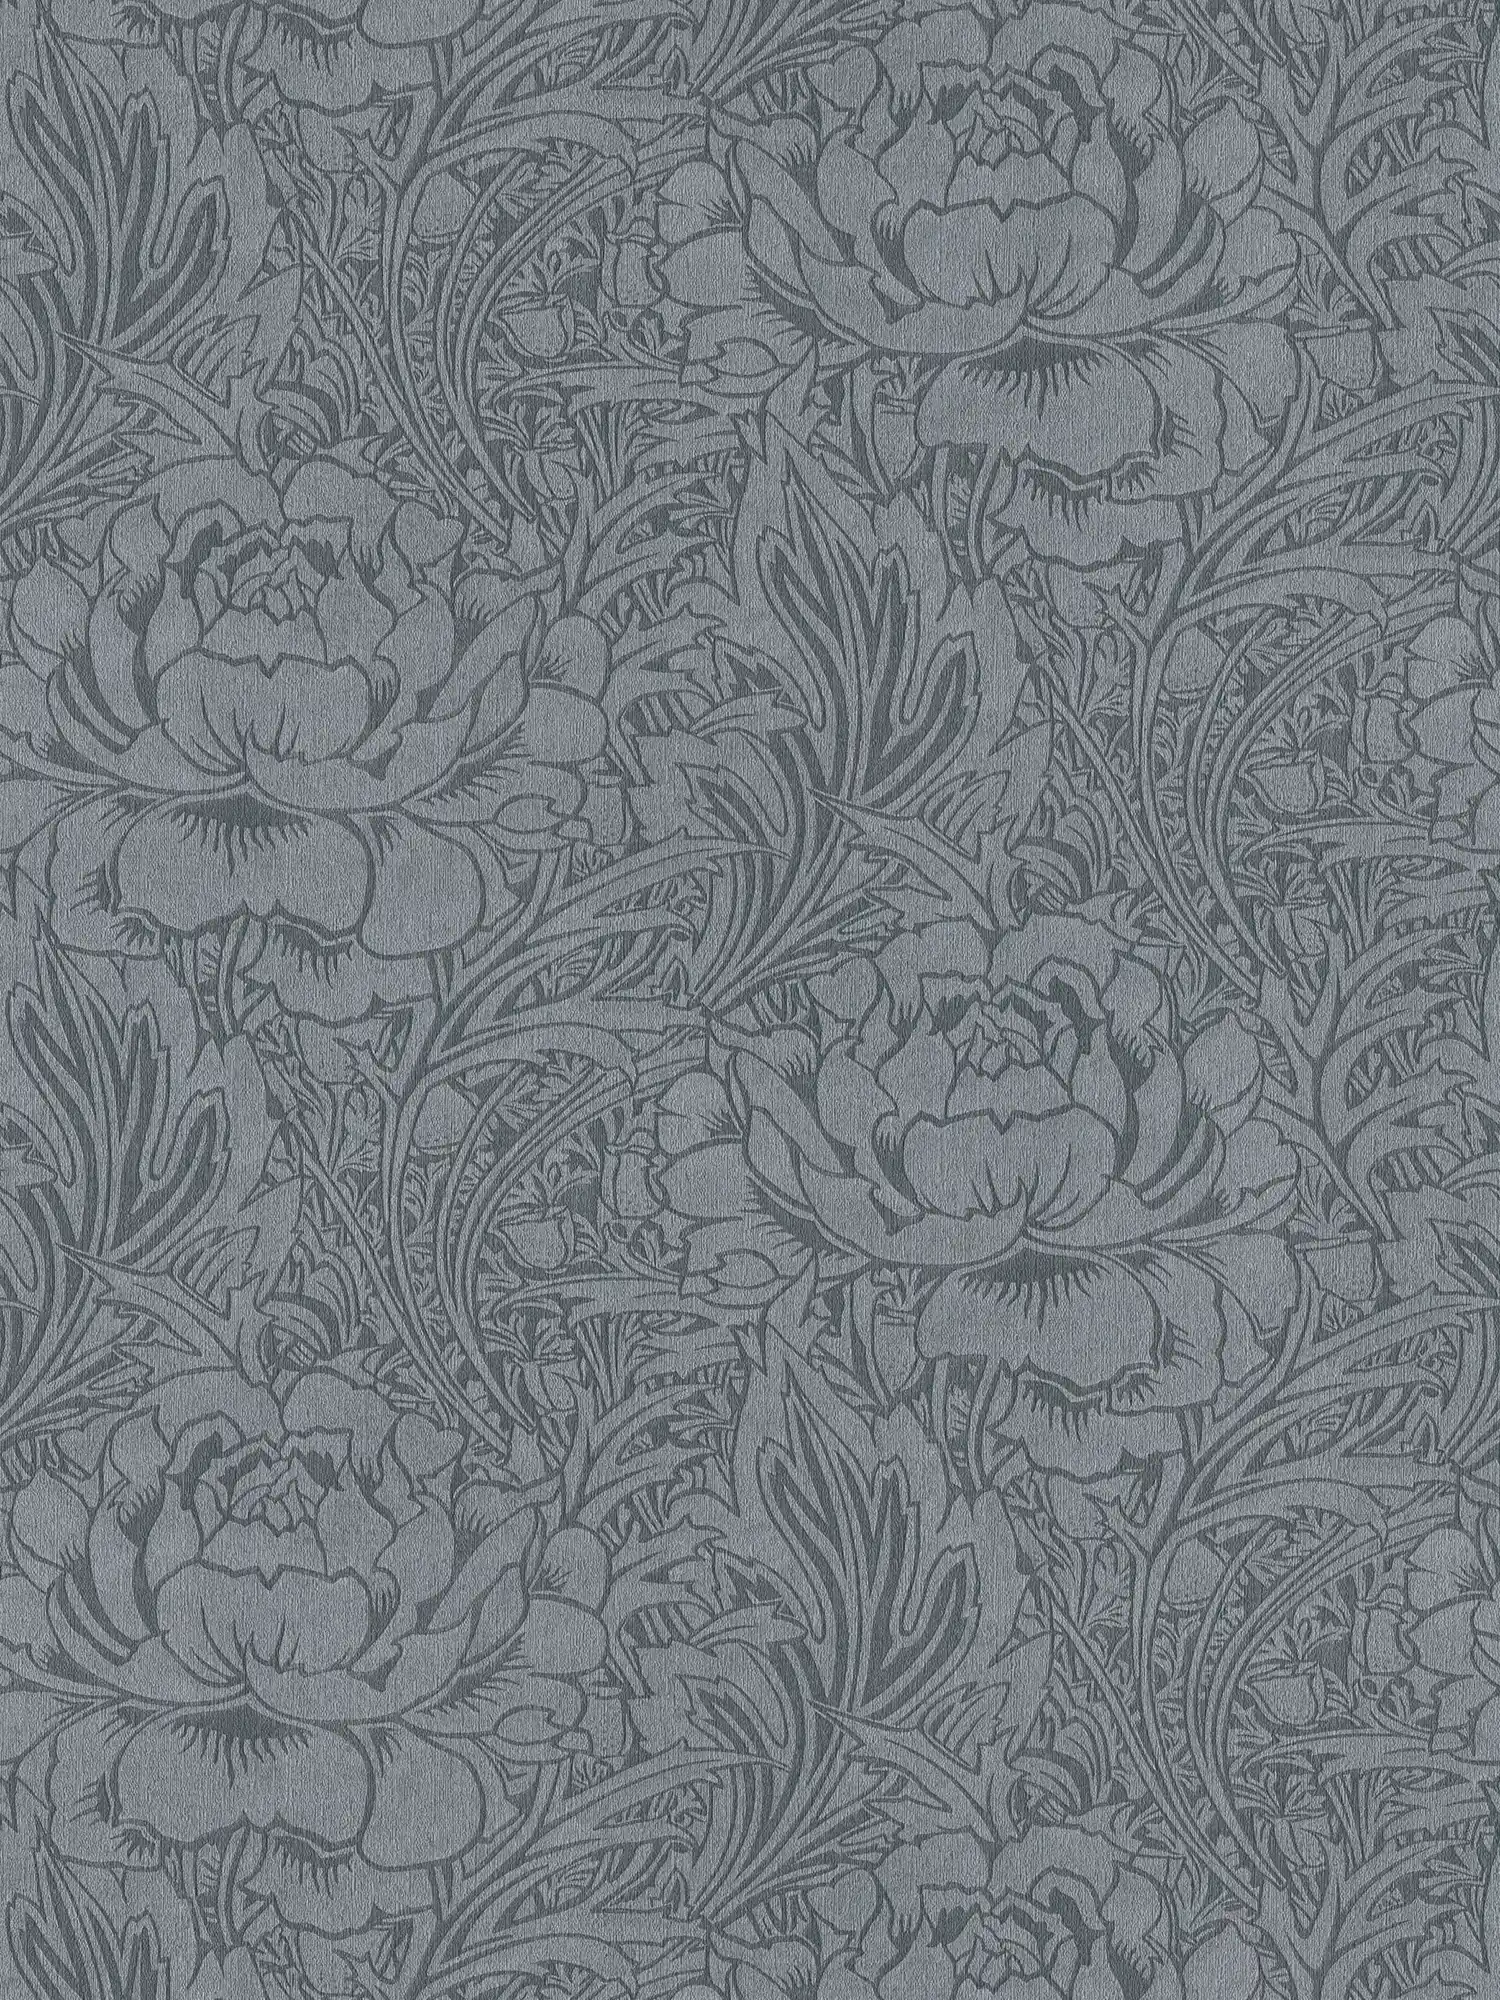 Floral wallpaper grey with floral art nouveau design
